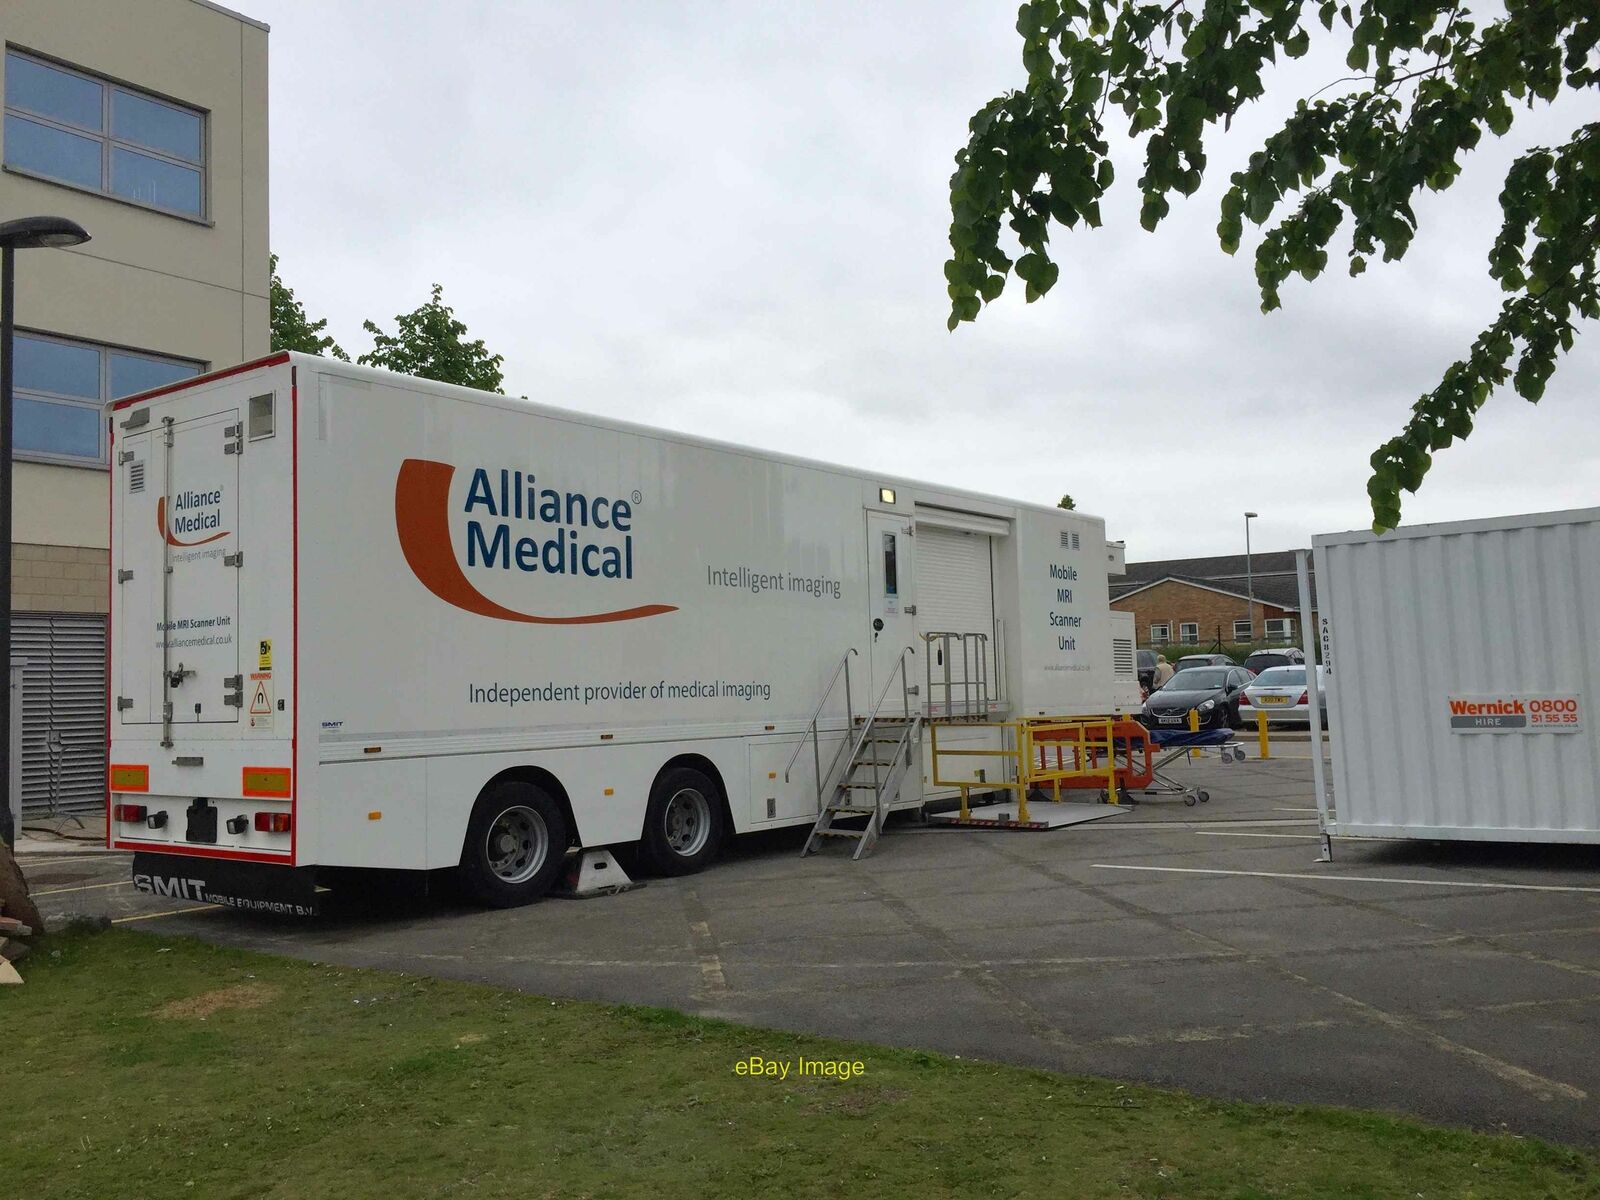 Photo 12x8 Royal Stoke University Hospital: mobile MRI unit Newcastle-unde c2016